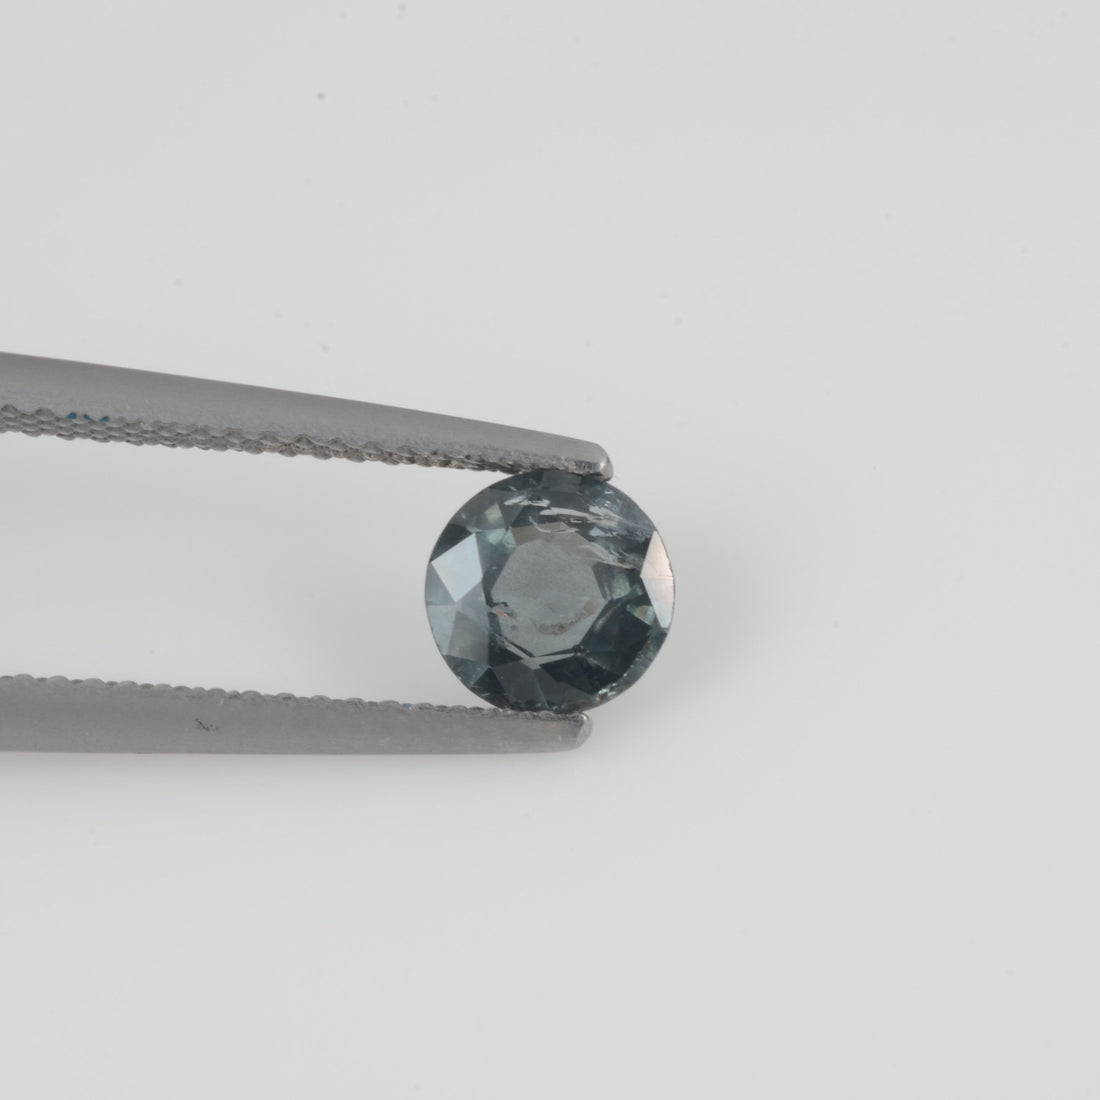 6.1 mm Natural Bluish Green Sapphire Loose Gemstone Round Cut - Thai Gems Export Ltd.